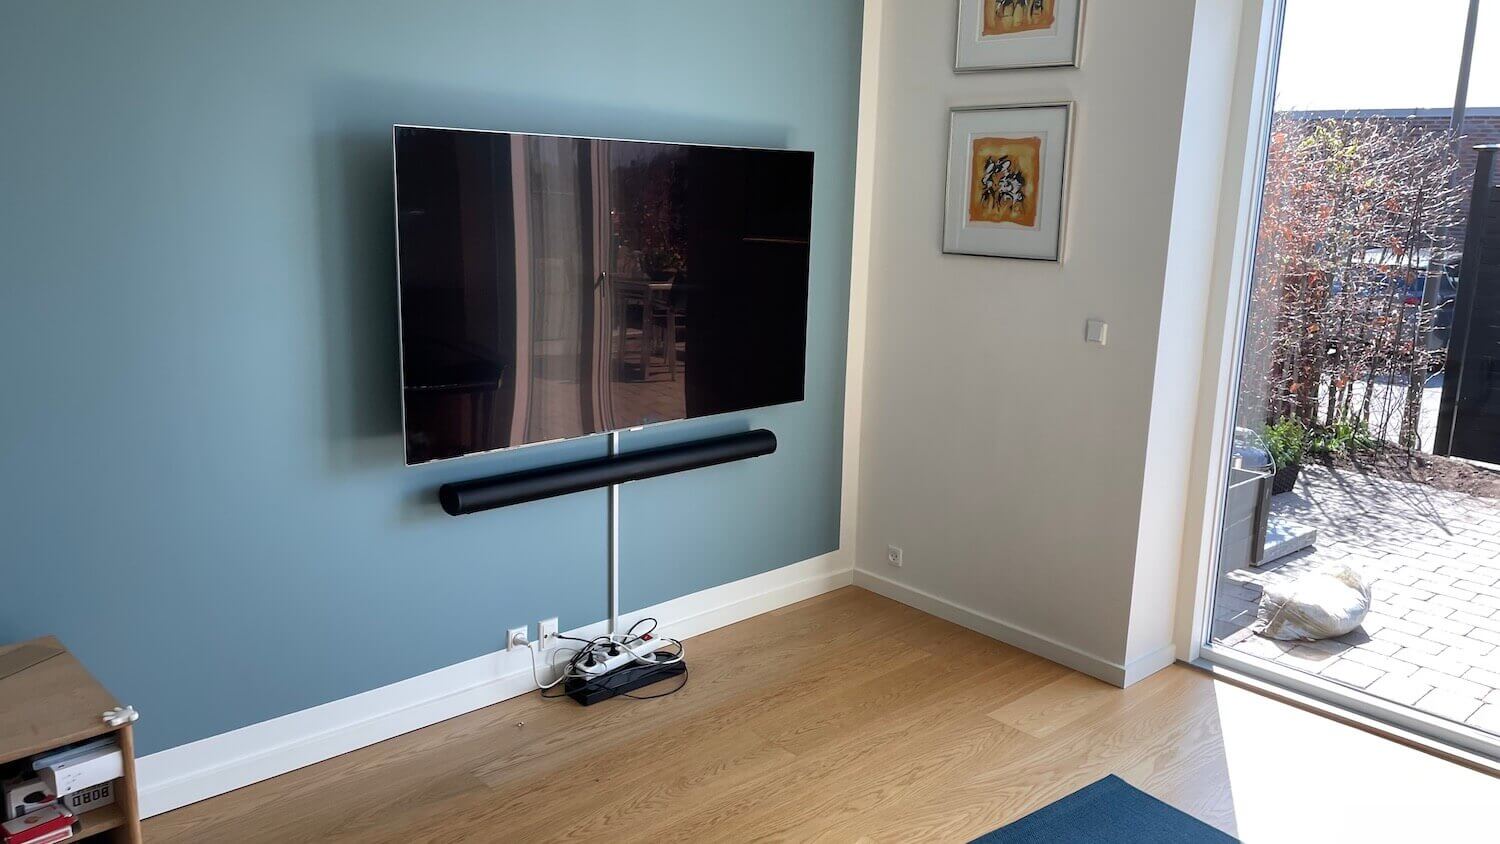 Opsætning af Sonos soundbar, kabelbakke og 55" Samsung TV vægbeslag med drejefunktion - TV montering